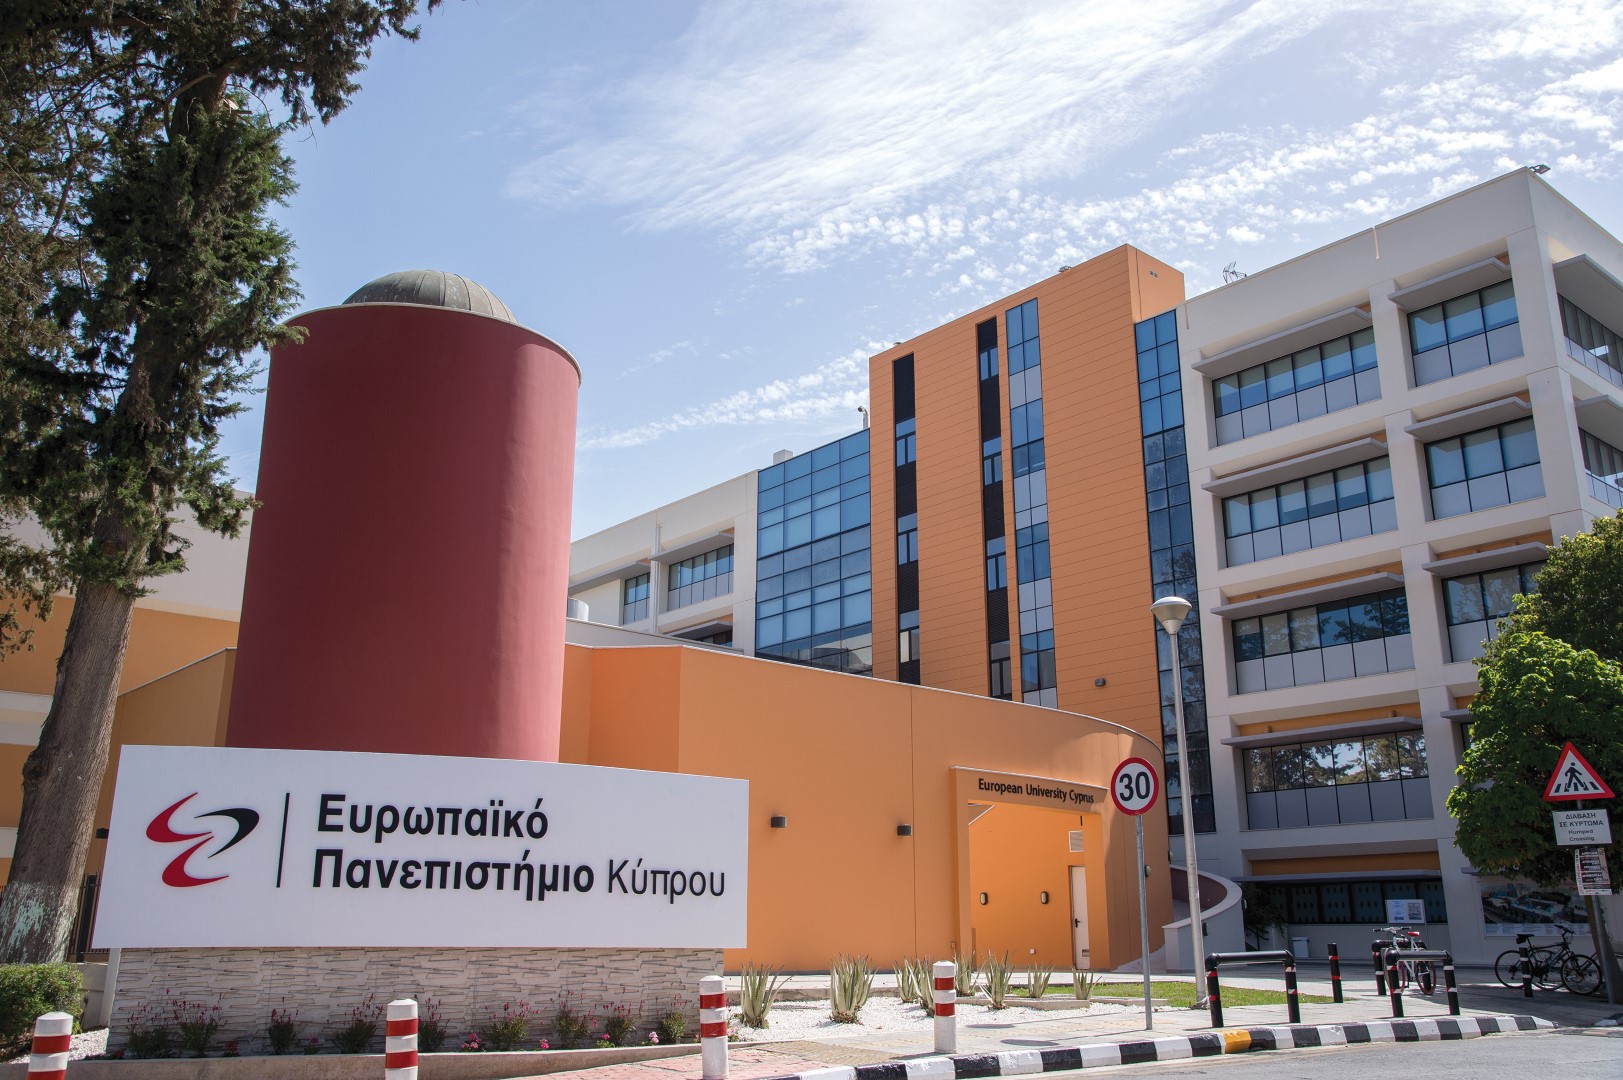 U-Multirank : Στα κορυφαία της Ευρώπης το Ευρωπαϊκό Πανεπιστήμιο Κύπρου  